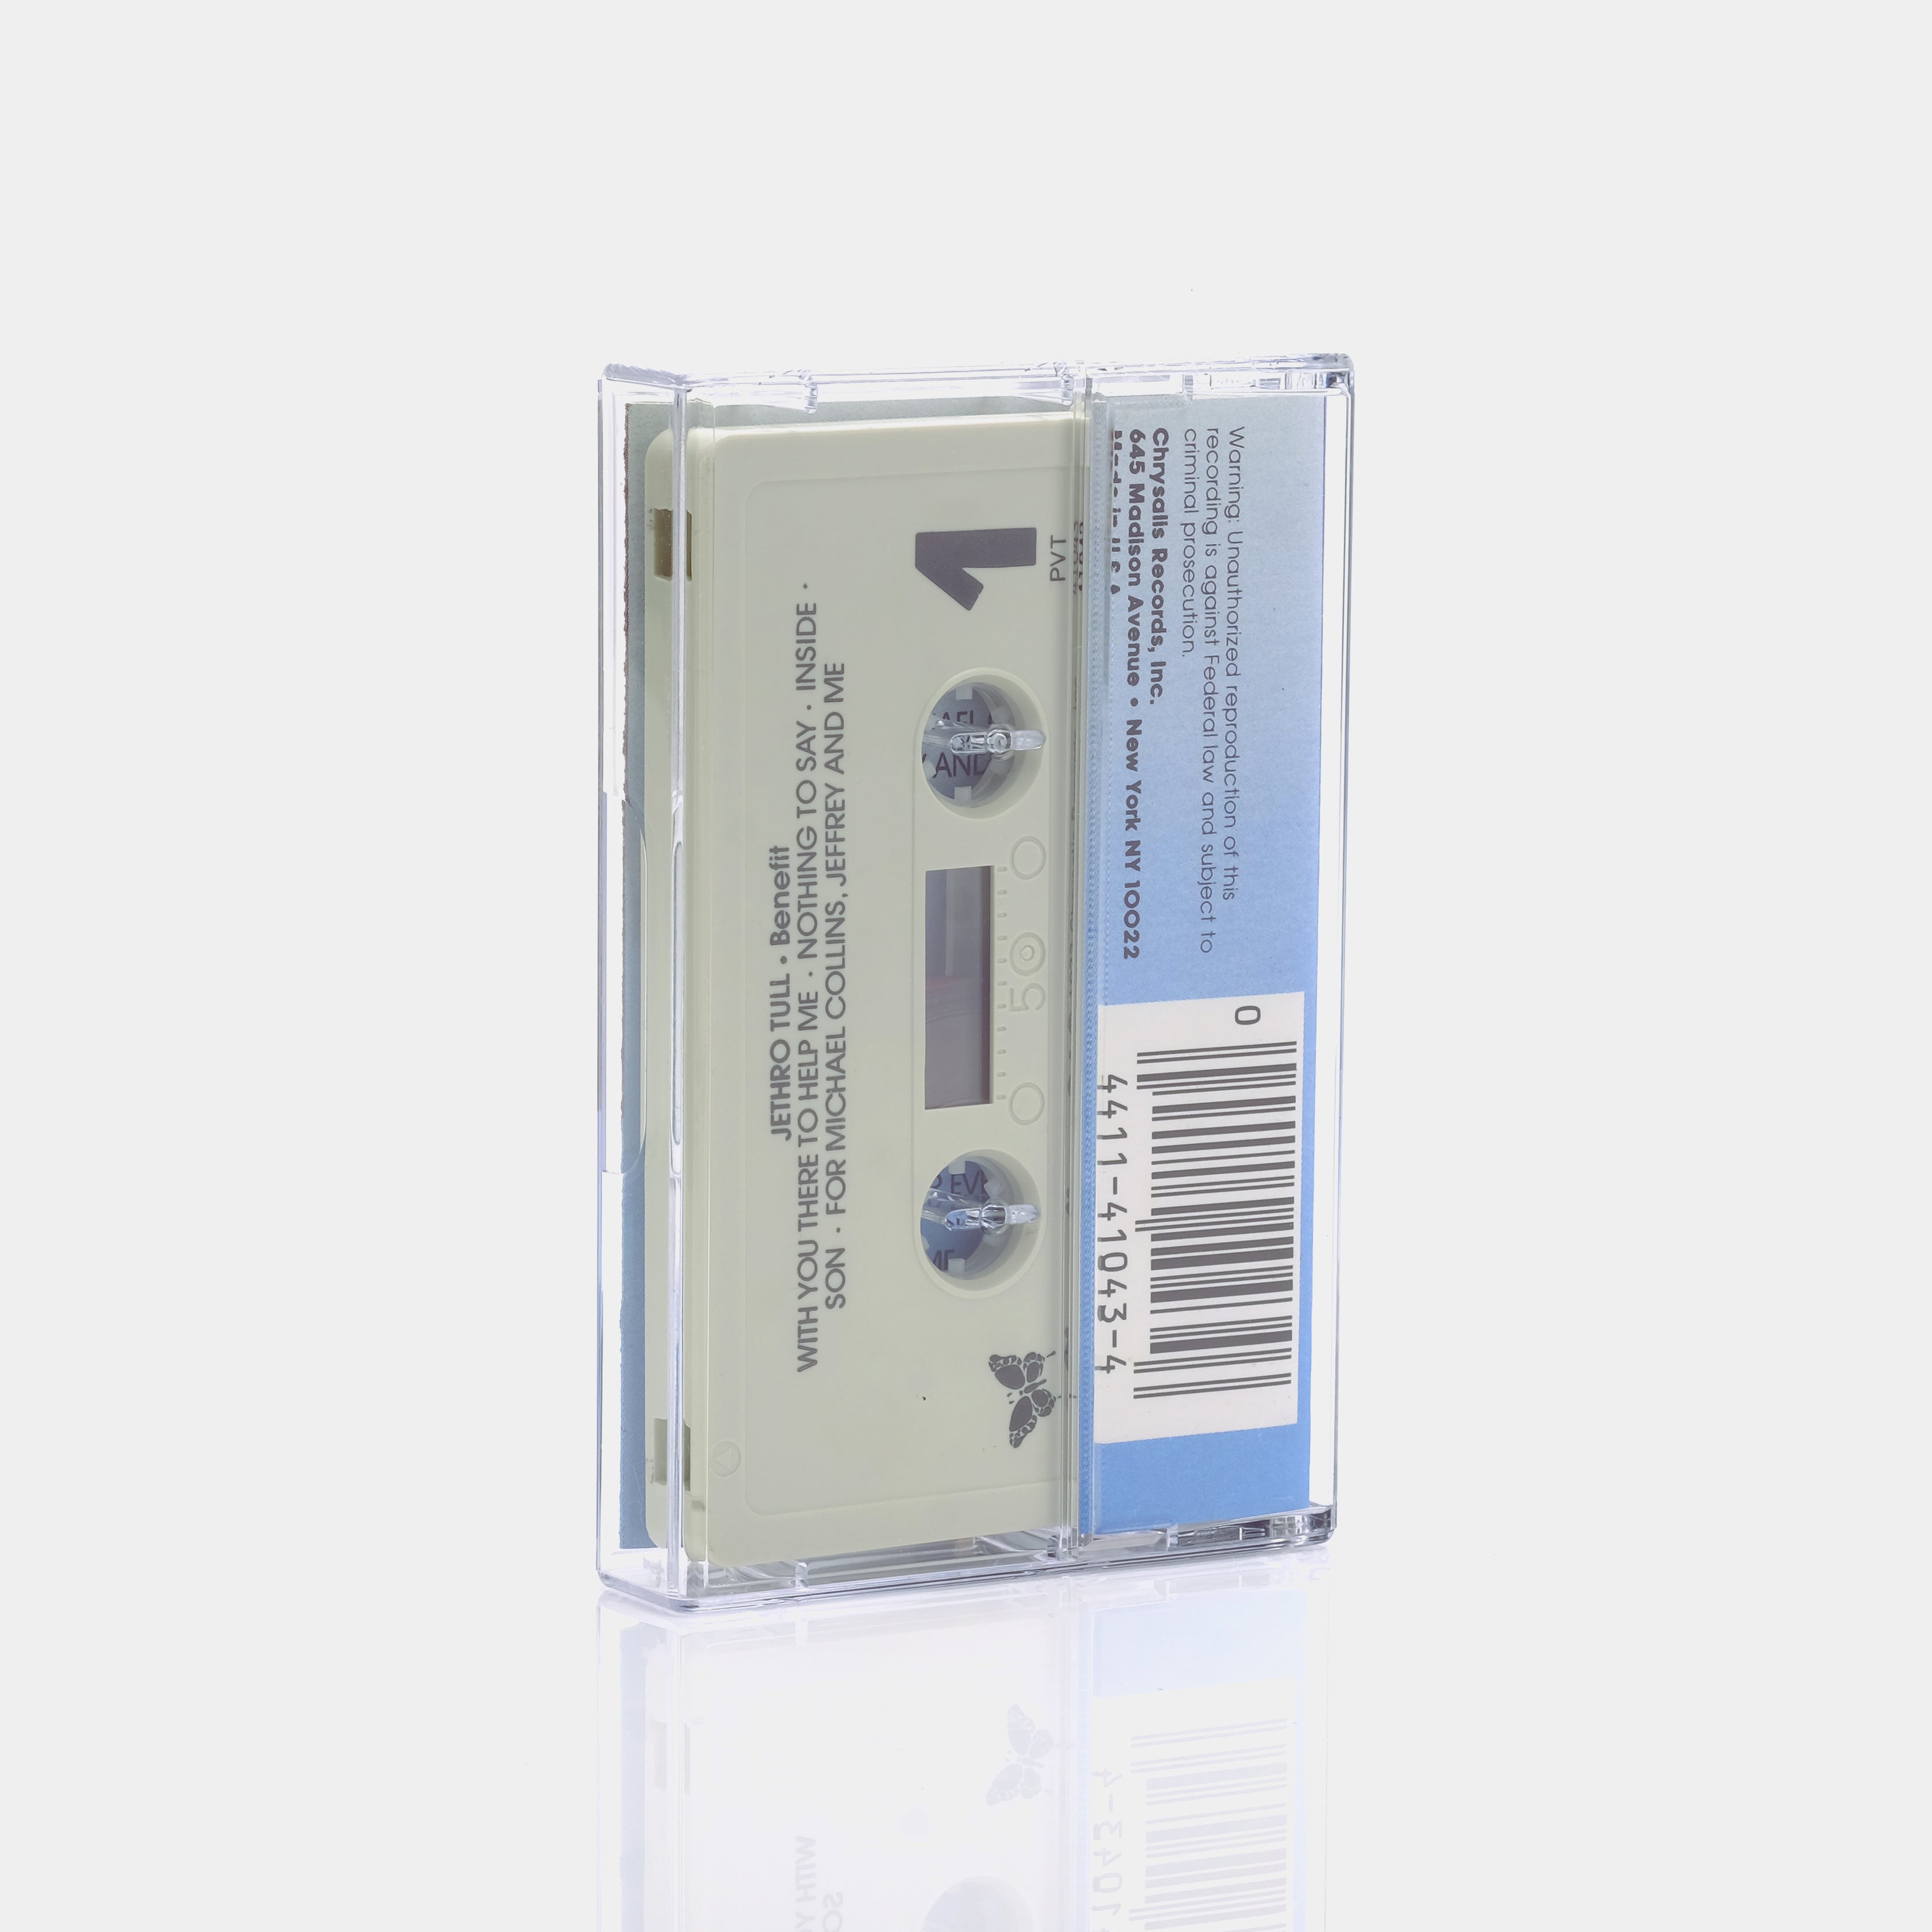 Jethro Tull - Benefit Cassette Tape